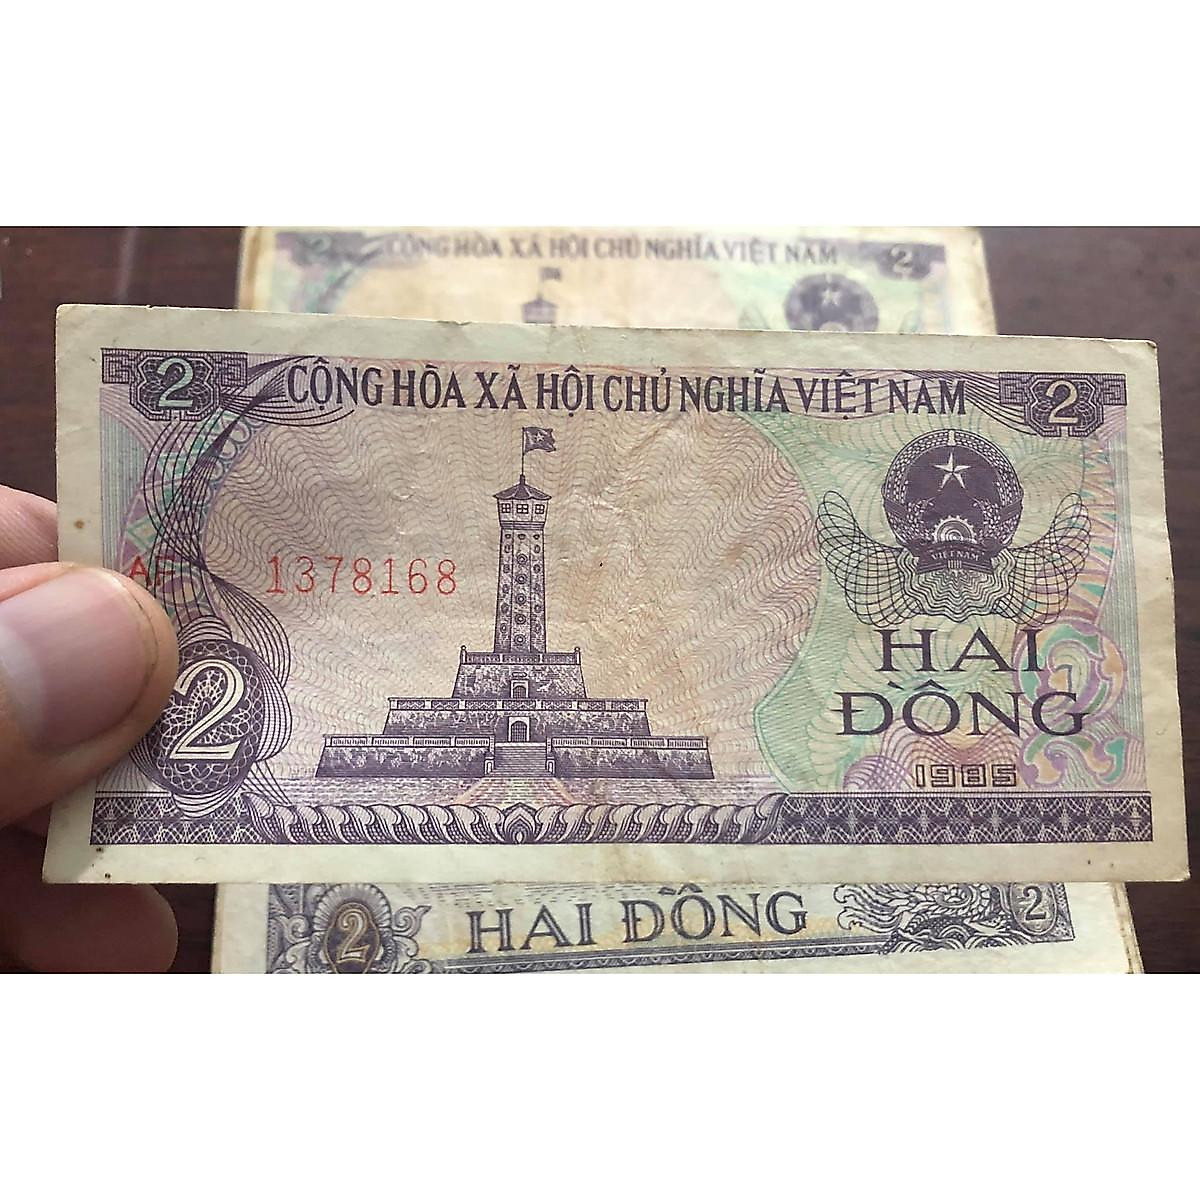 Bạn có thắc mắc về tiền mệnh giá 2 đồng của Việt Nam? Hãy cùng xem hình ảnh của nó và tìm hiểu thêm về giá trị và ý nghĩa của cách tín dụng tiền tệ này trong lịch sử Việt Nam.